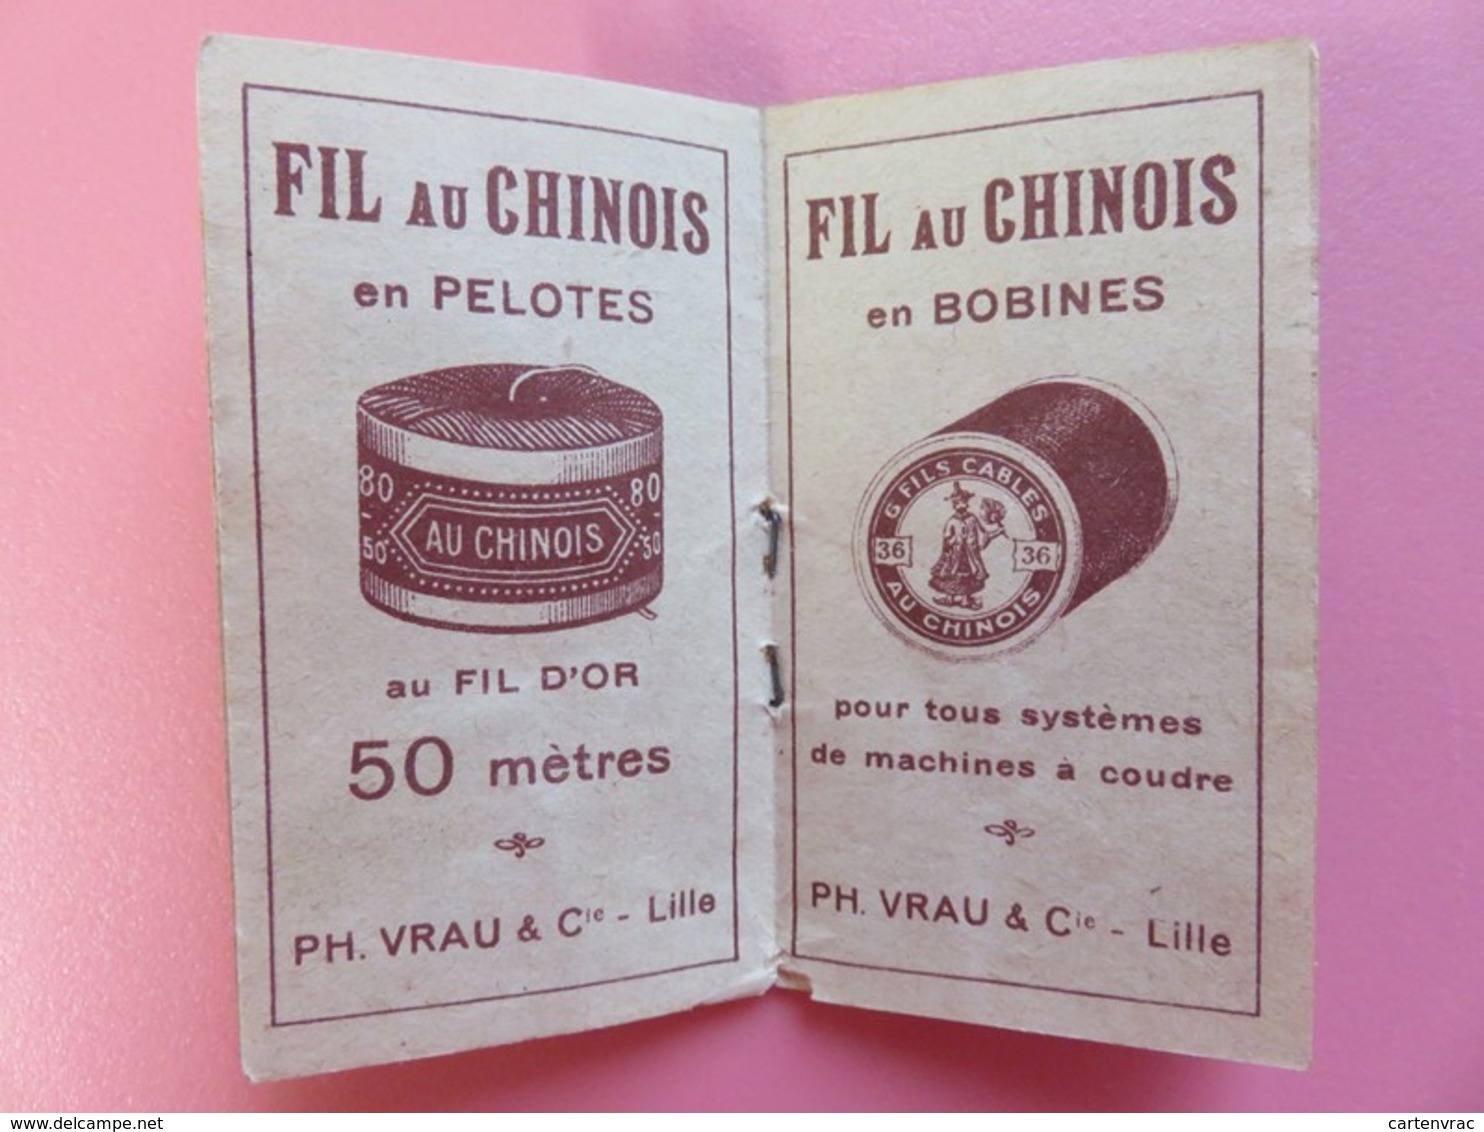 Calendrier 1930 - Fil au chinois - PH. Vrau & Cie - Lille - Complet - Publicités fil pelotes et fil bobines